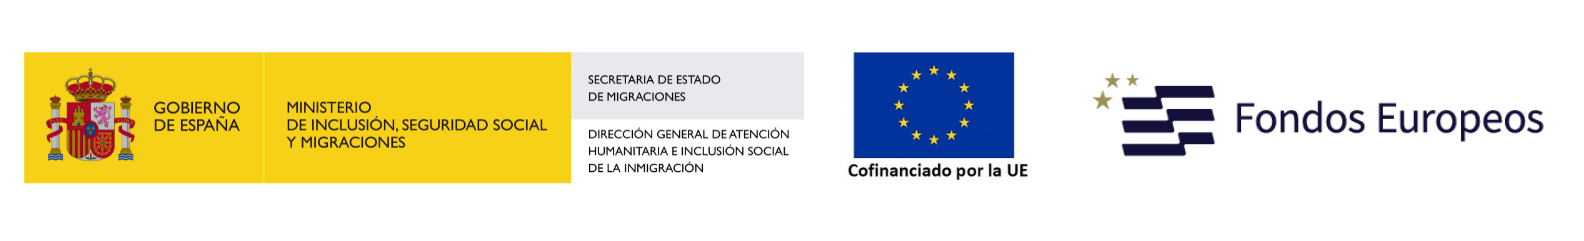 Ministerio Unión Europea Fondos Europeos Inmigración logotipo